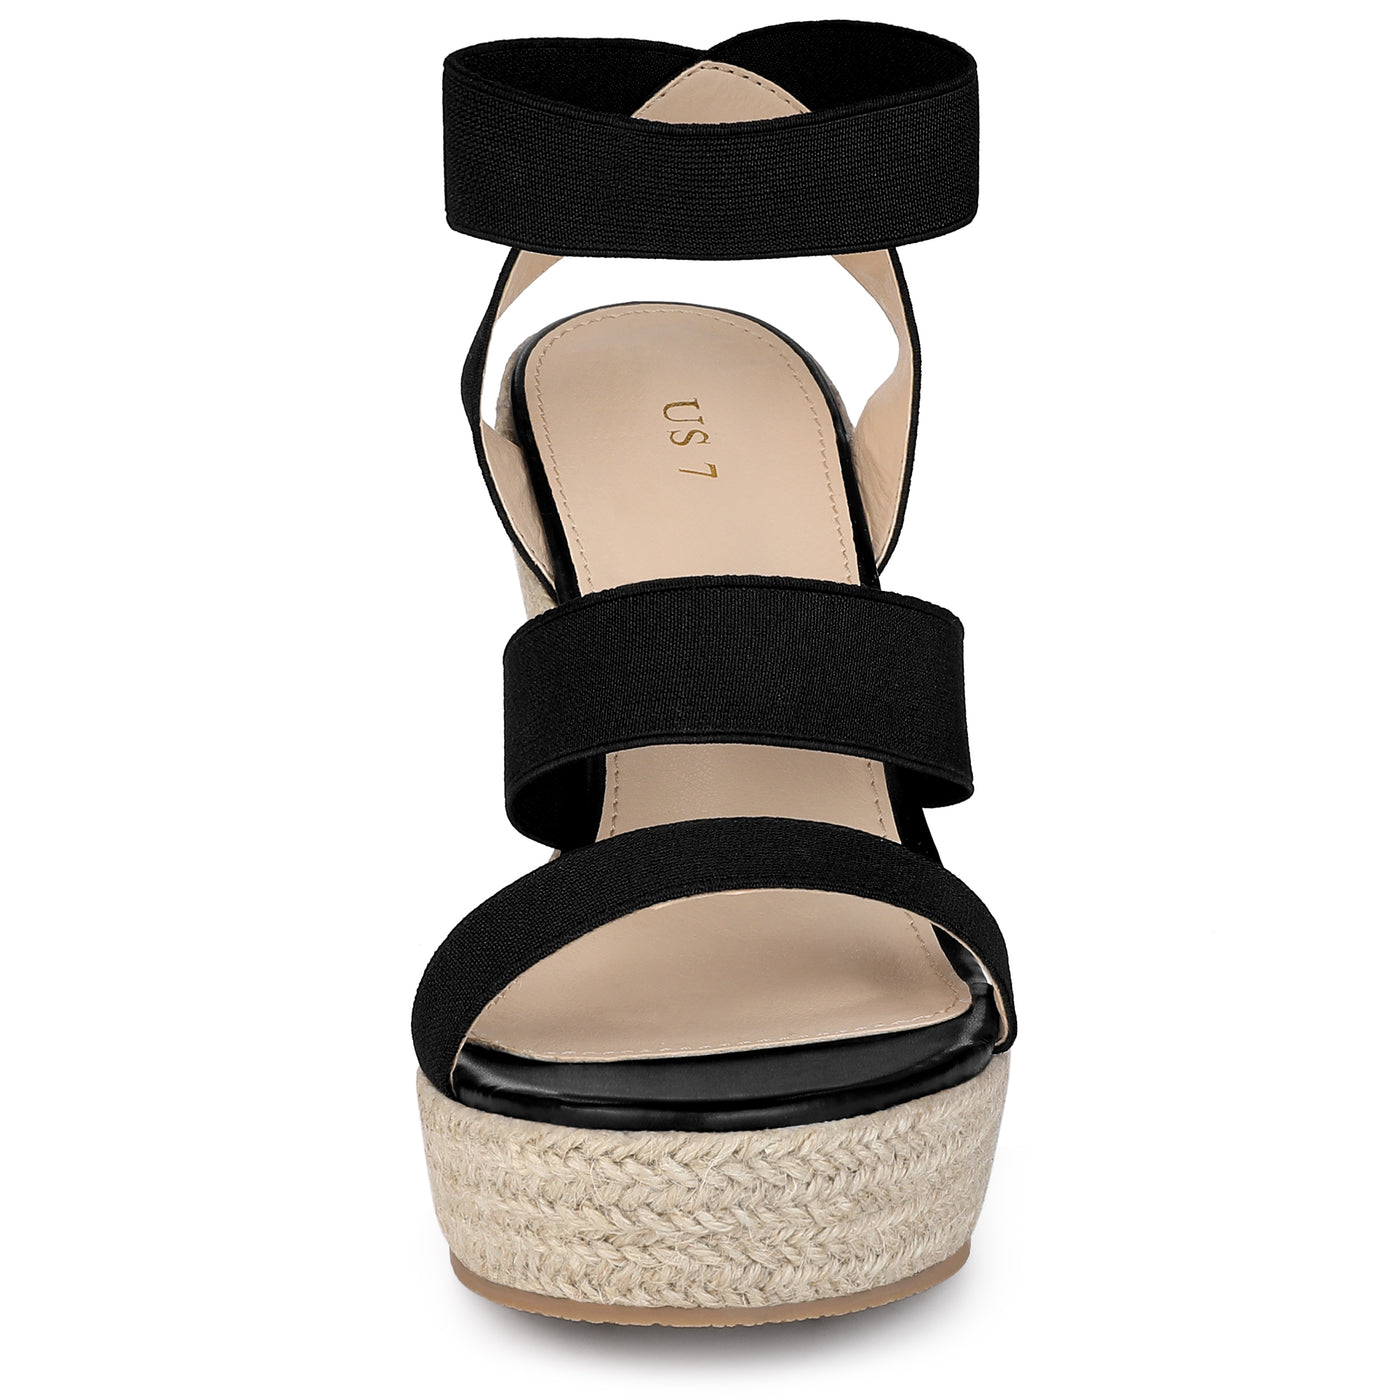 Allegra K Women' s Platform Slingback Ankle Strap Espadrille Wedges Heel Sandals